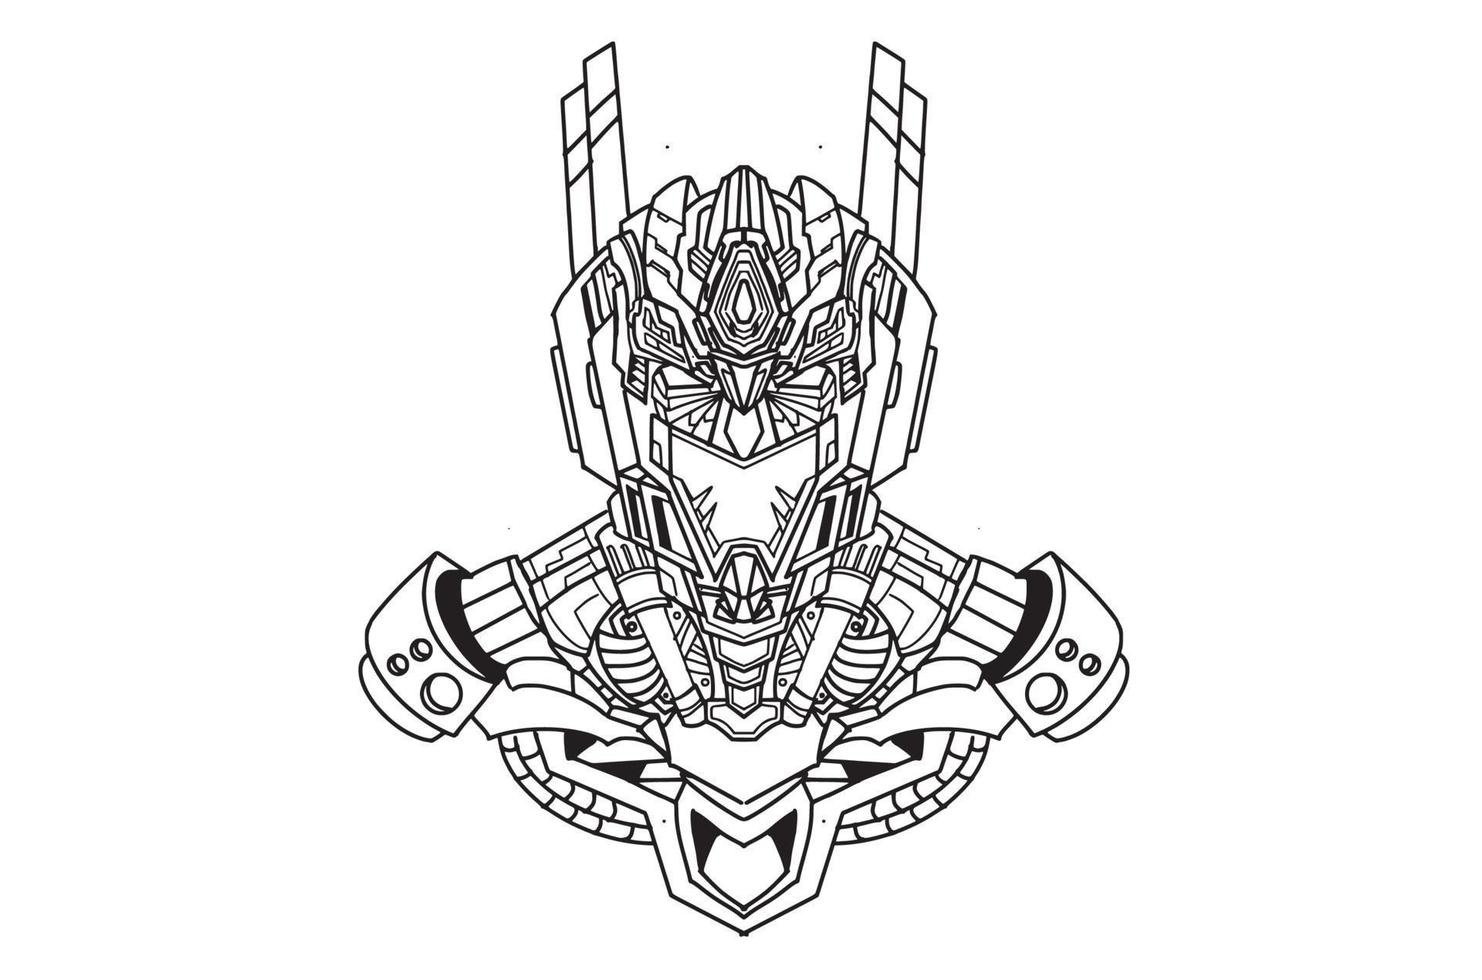 Hand Zeichnung Illustration von schwarz Weiß gehörnt Schädel Kopf oni Samurai Grafik mit mechanisch Roboter Körper vektor